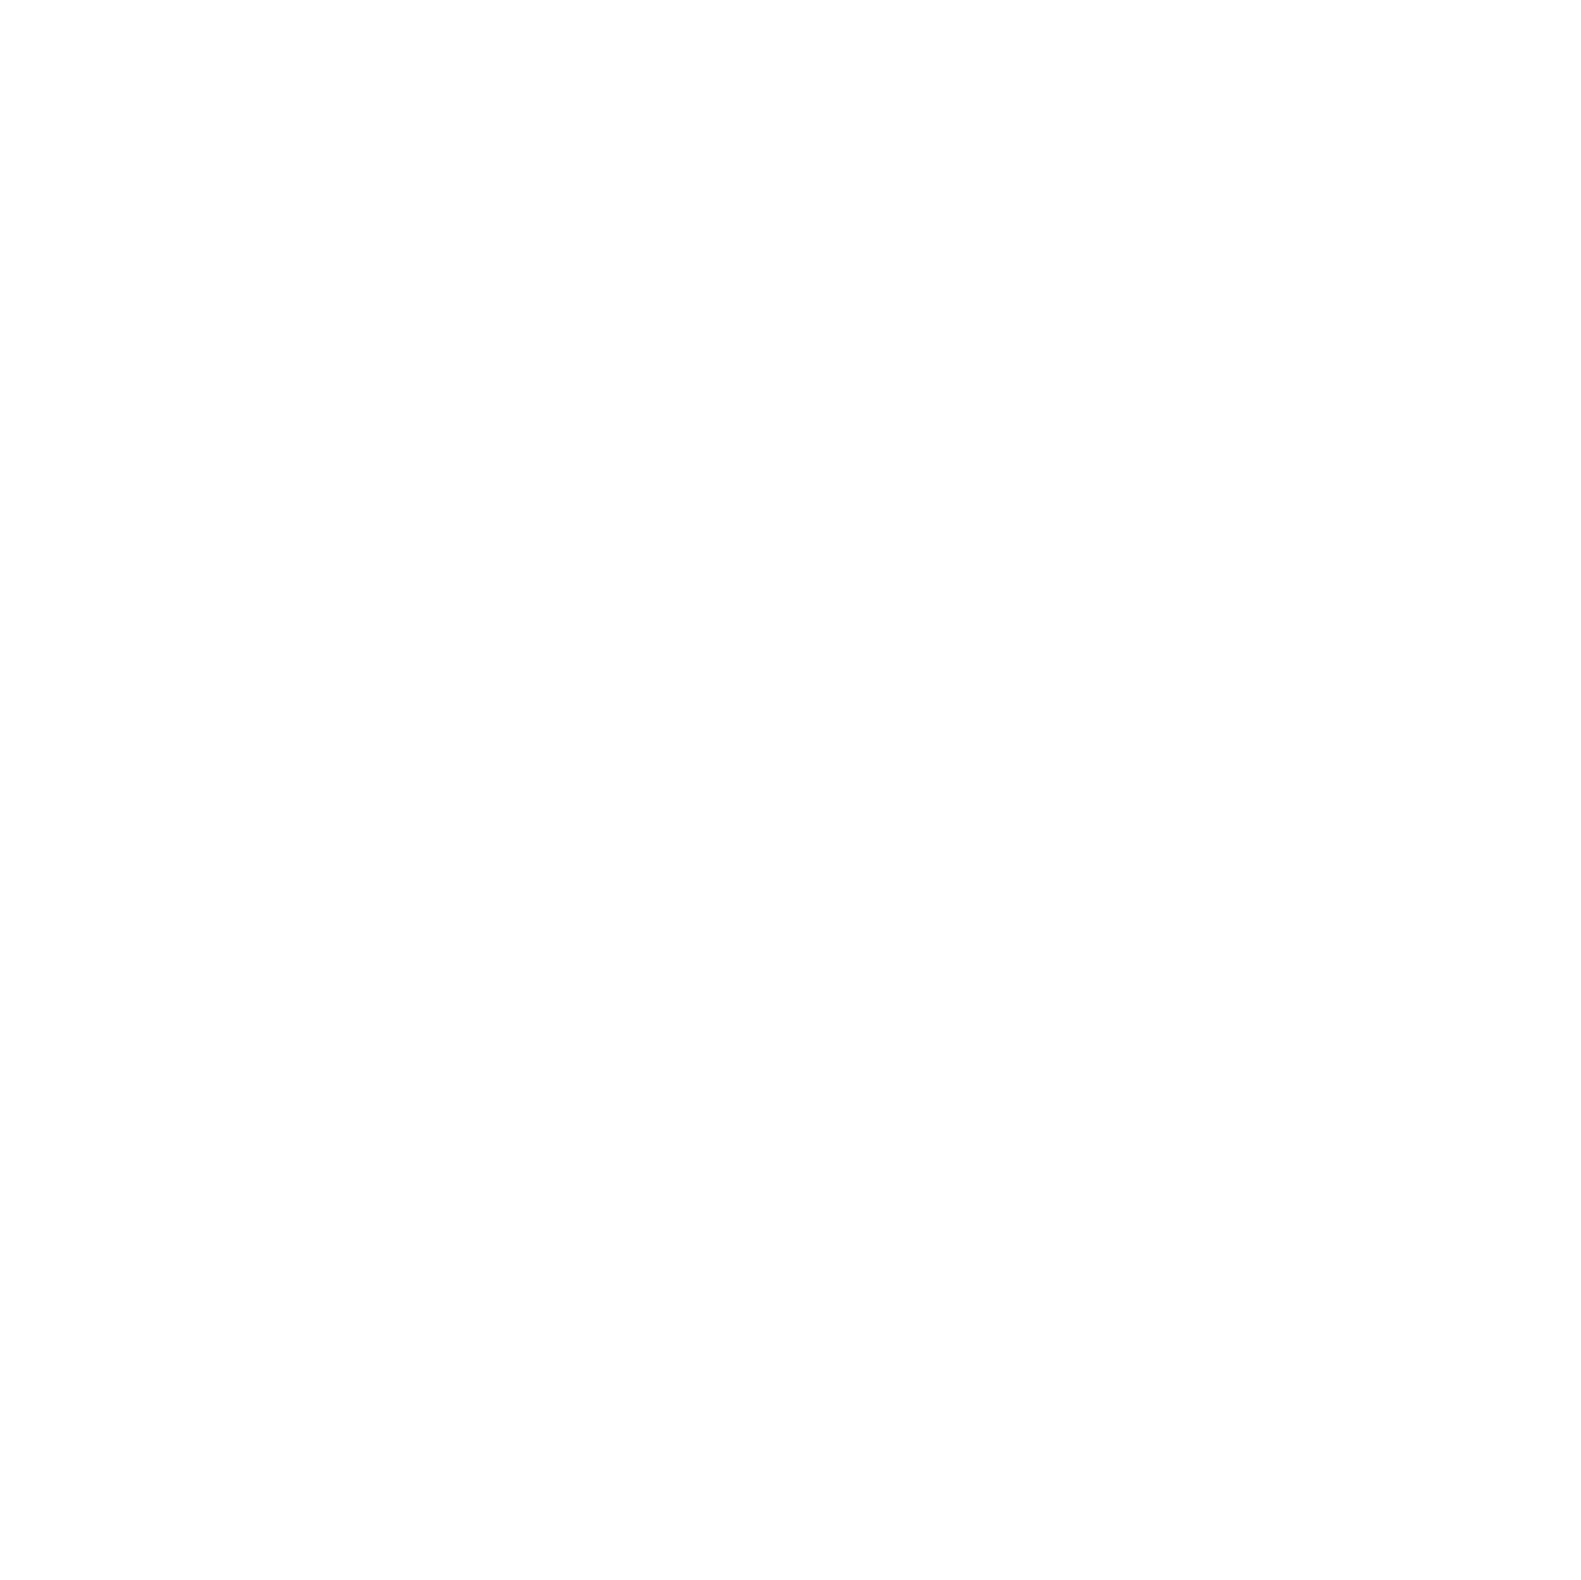 Symrise logo pour fonds sombres (PNG transparent)